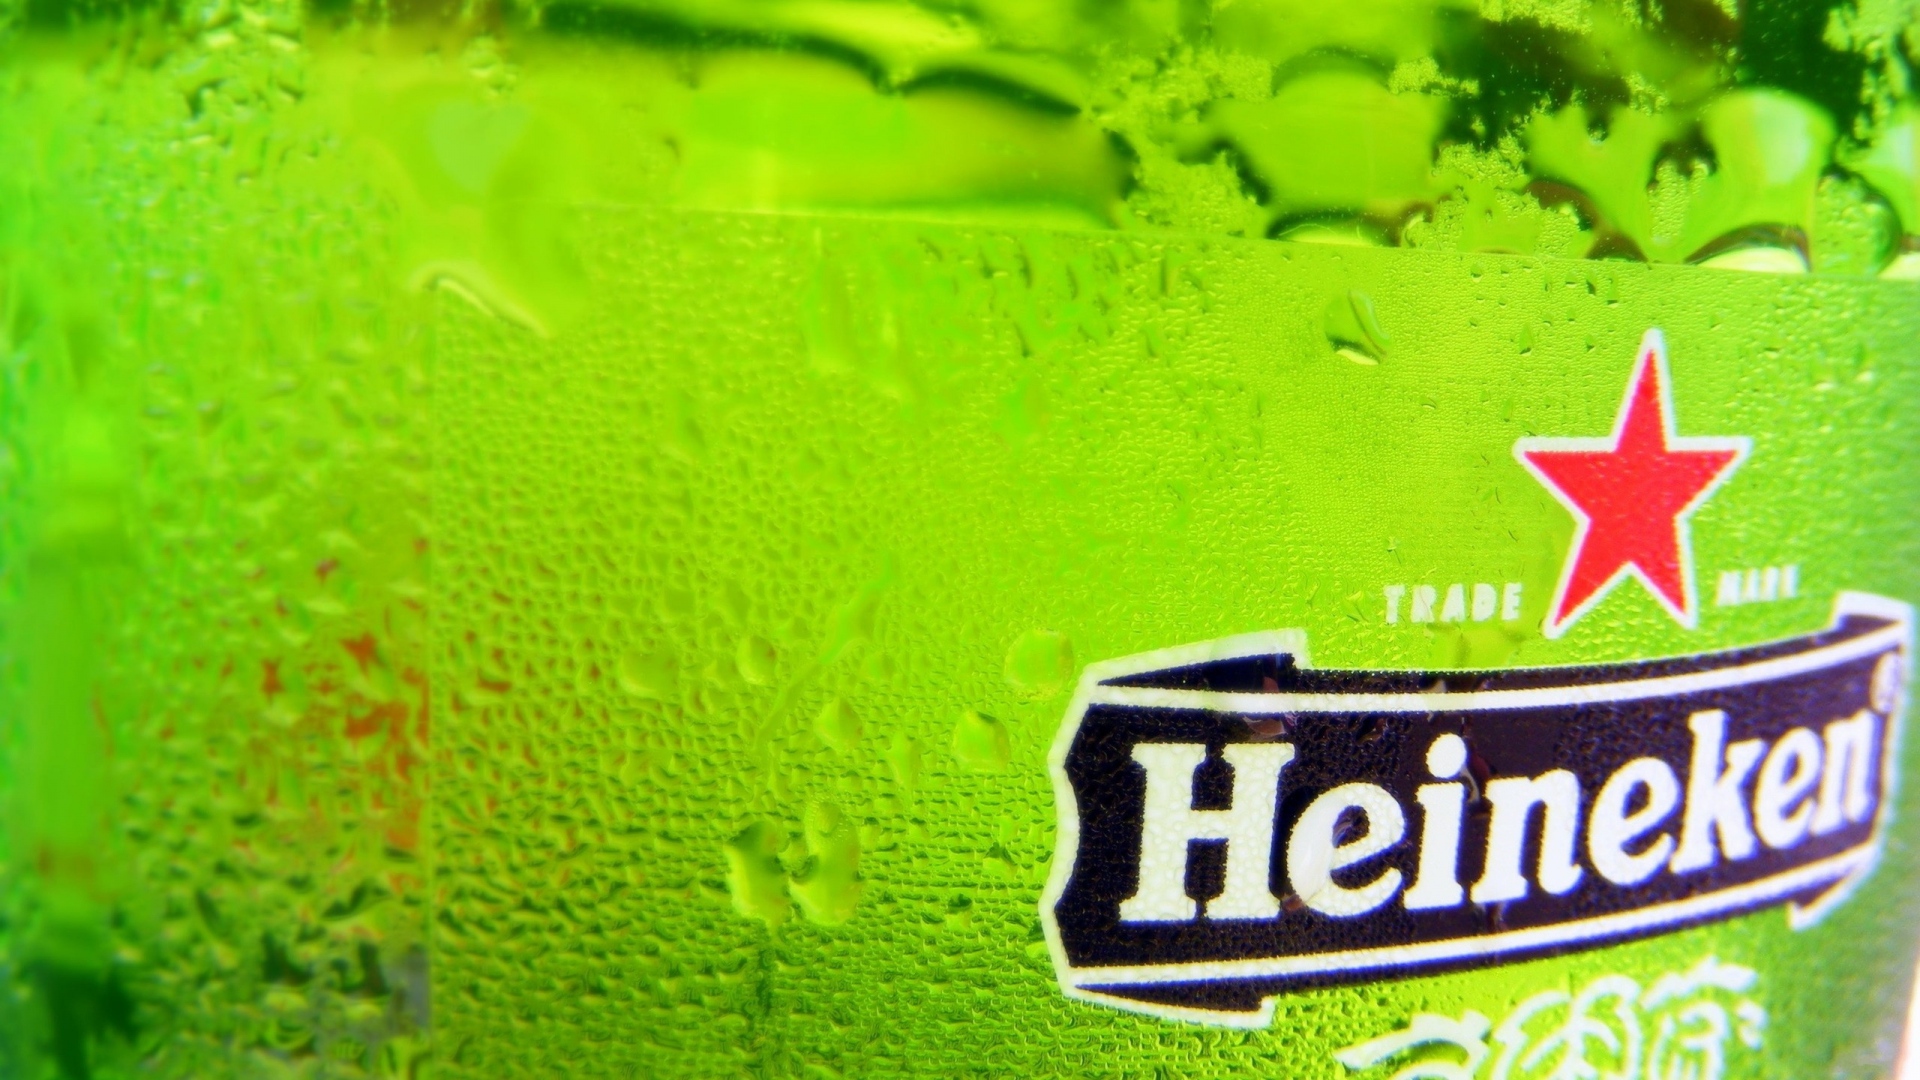 Download 1920x1080 HD Wallpaper heineken beer logo beer glass, Desktop Background HD